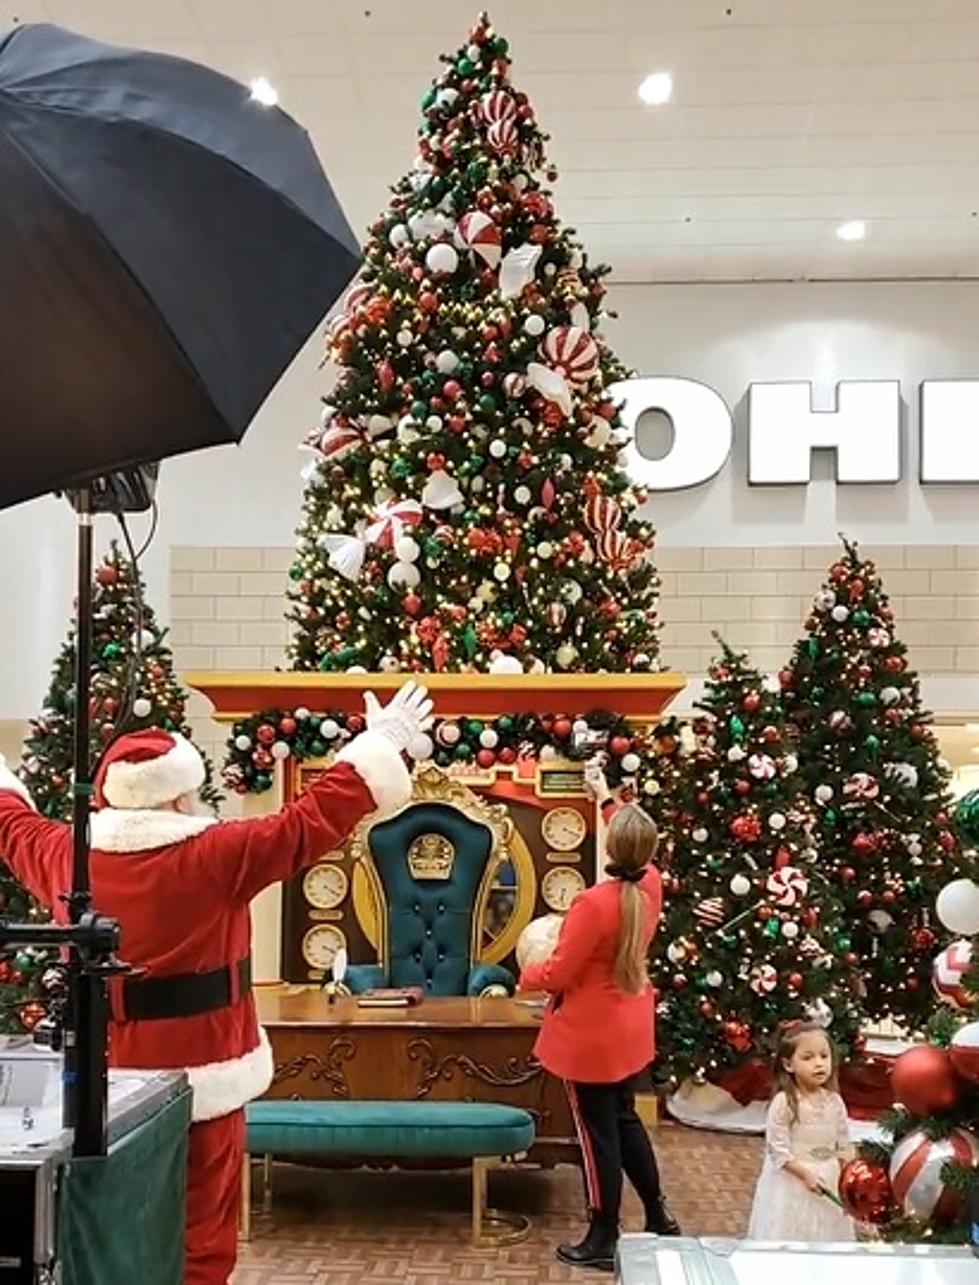 Santa Has Made His Grand Entrance at Valley Mall! (Gallery)